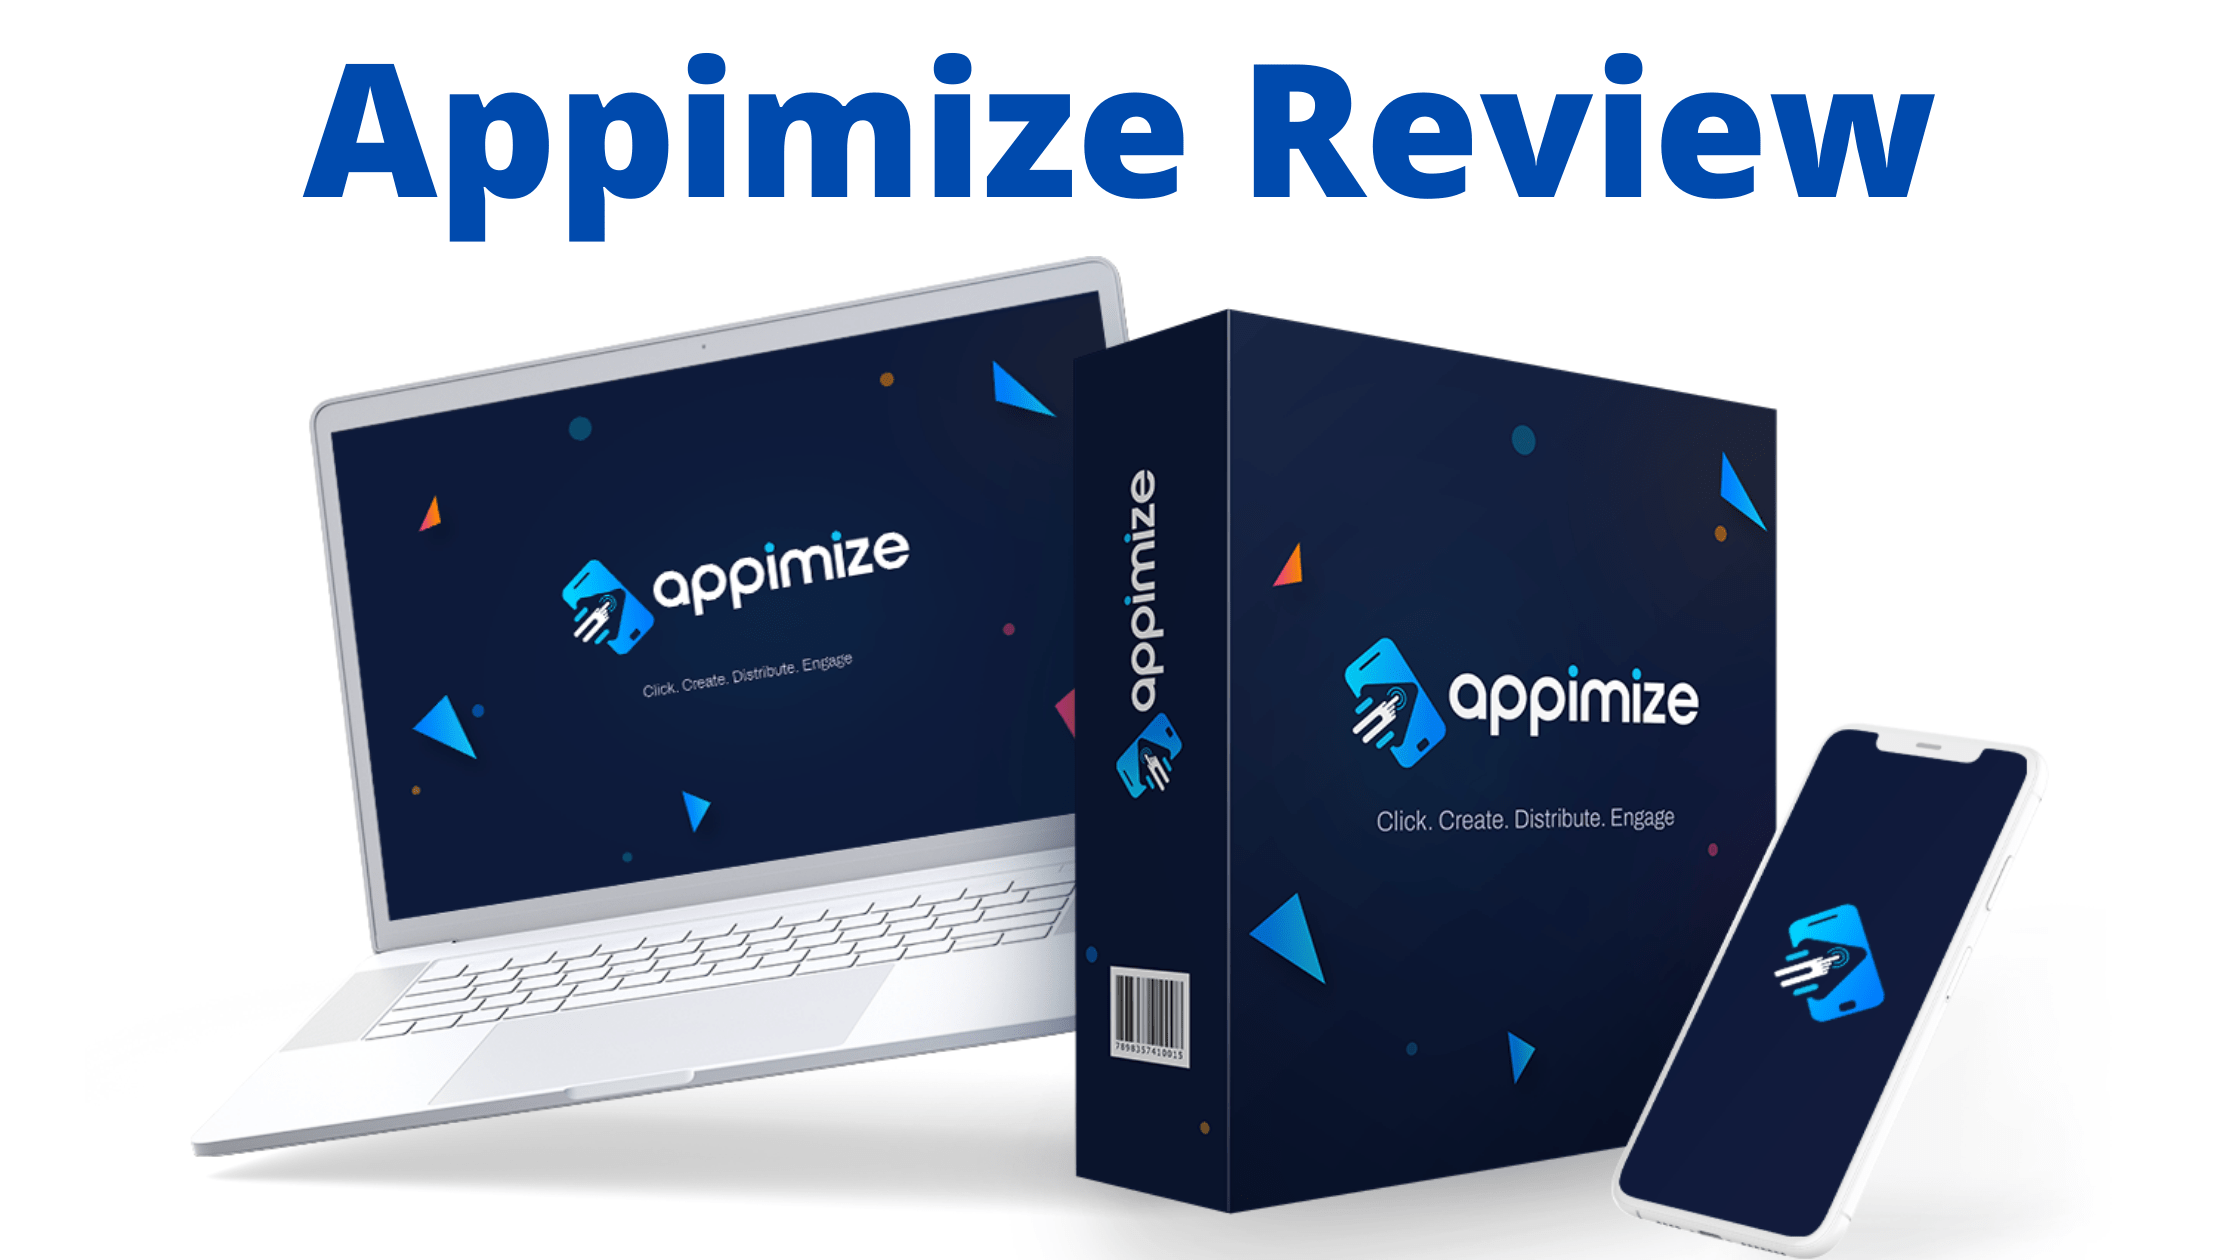 Appimize Review